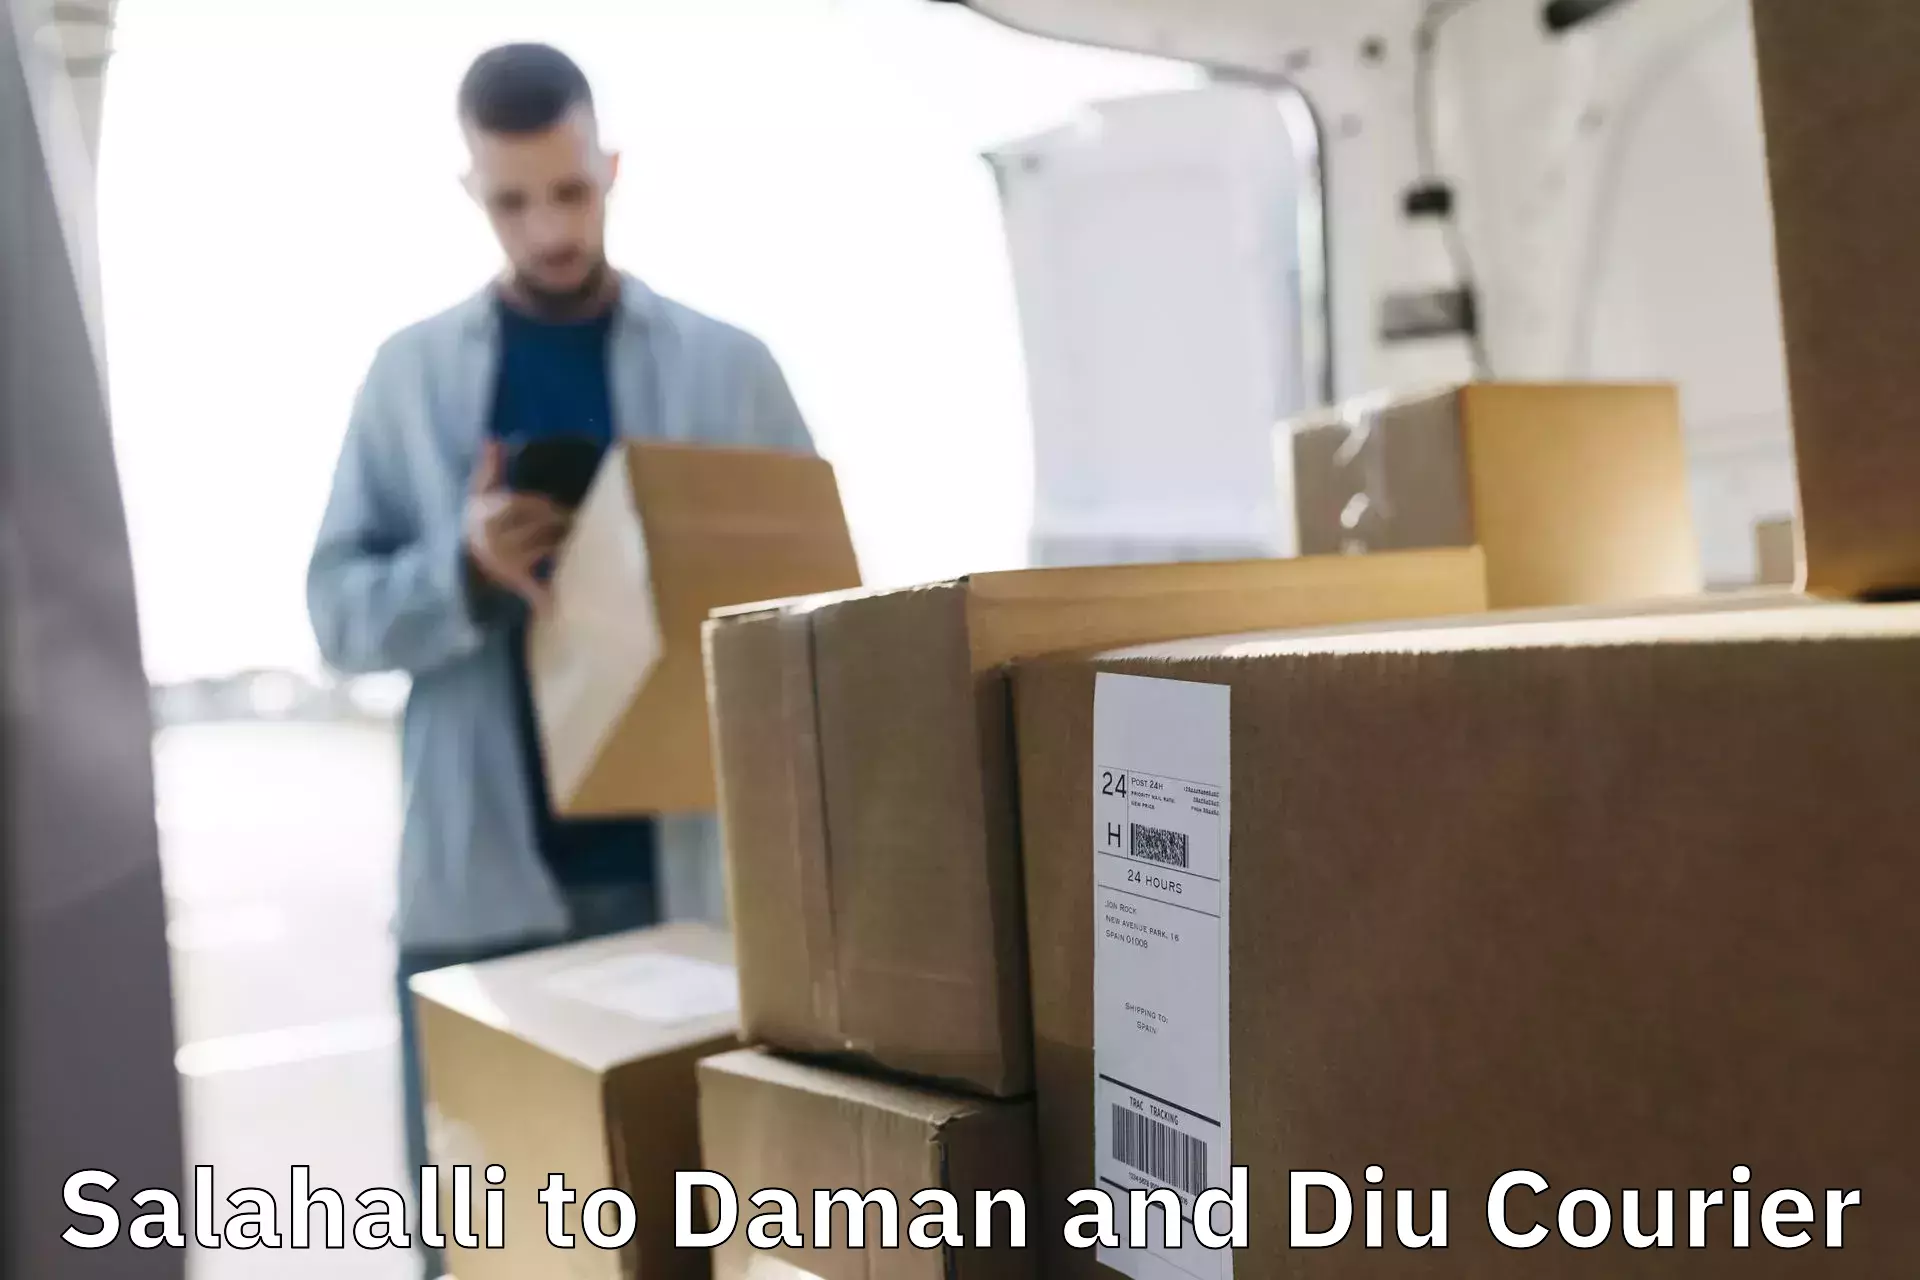 Bulk courier orders Salahalli to Daman